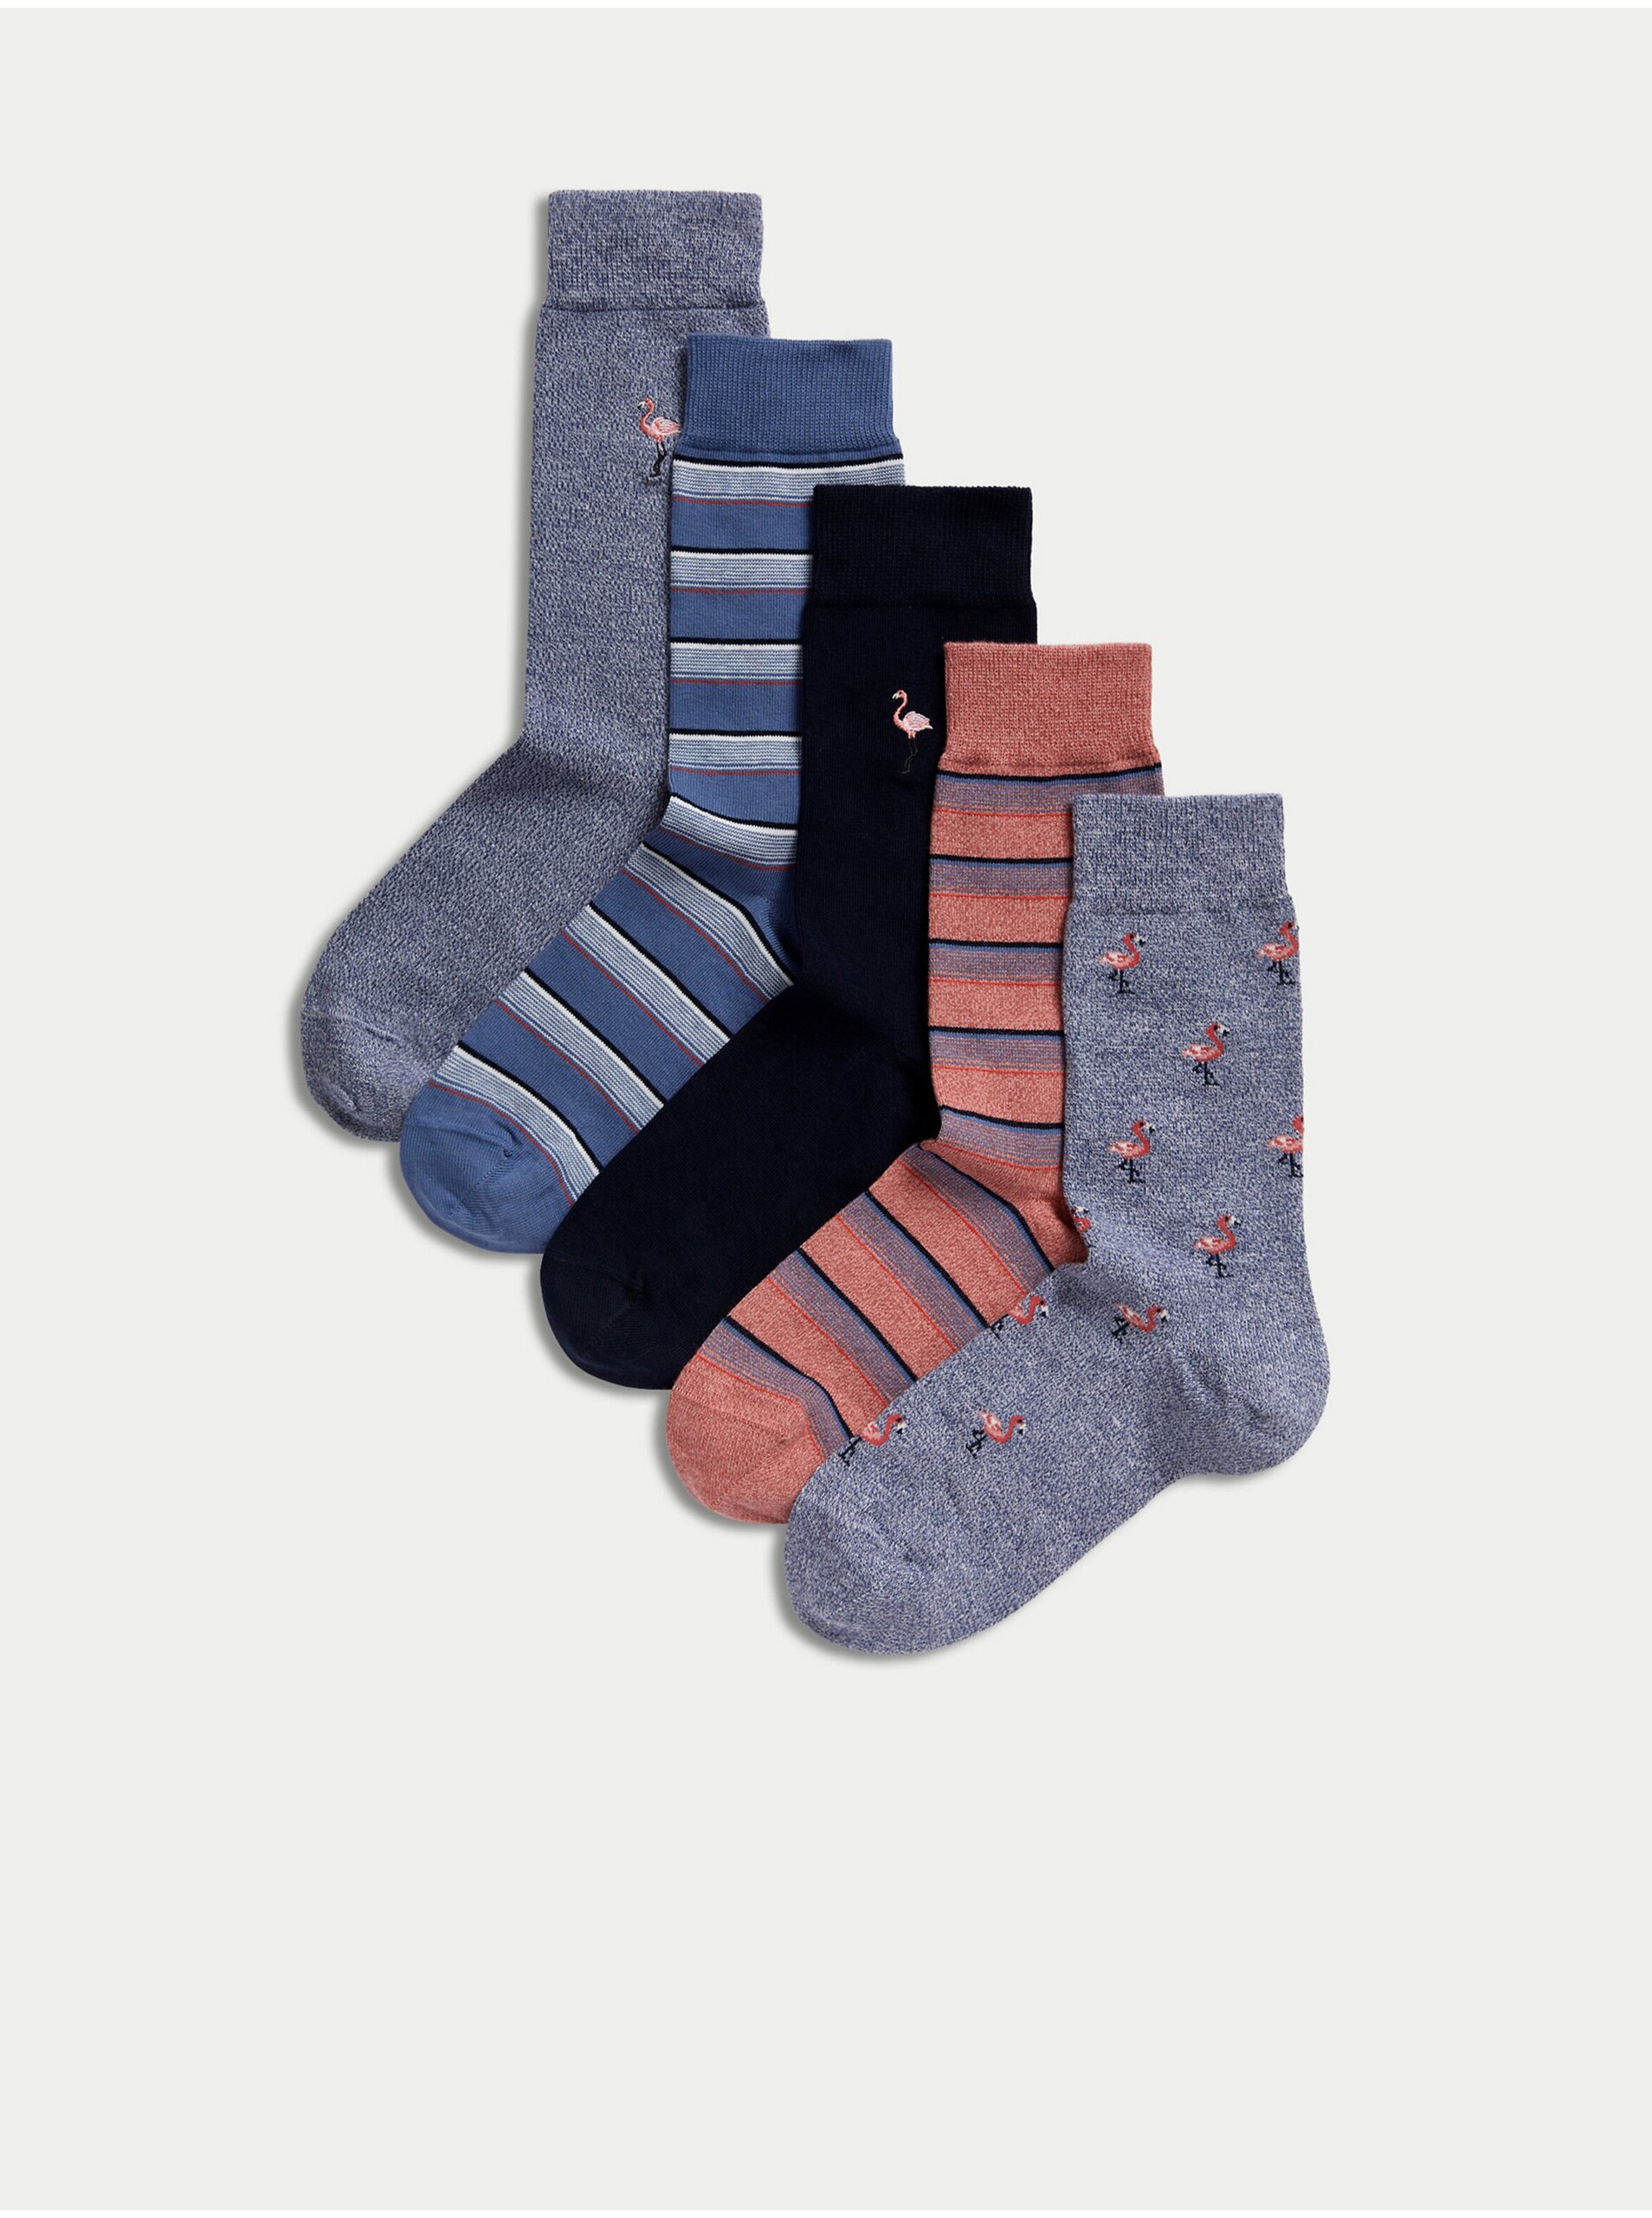 Lacno Súprava piatich párov pánskych ponožiek v modrej, šedej a ružovej farbe Marks & Spencer Cool & Fresh™